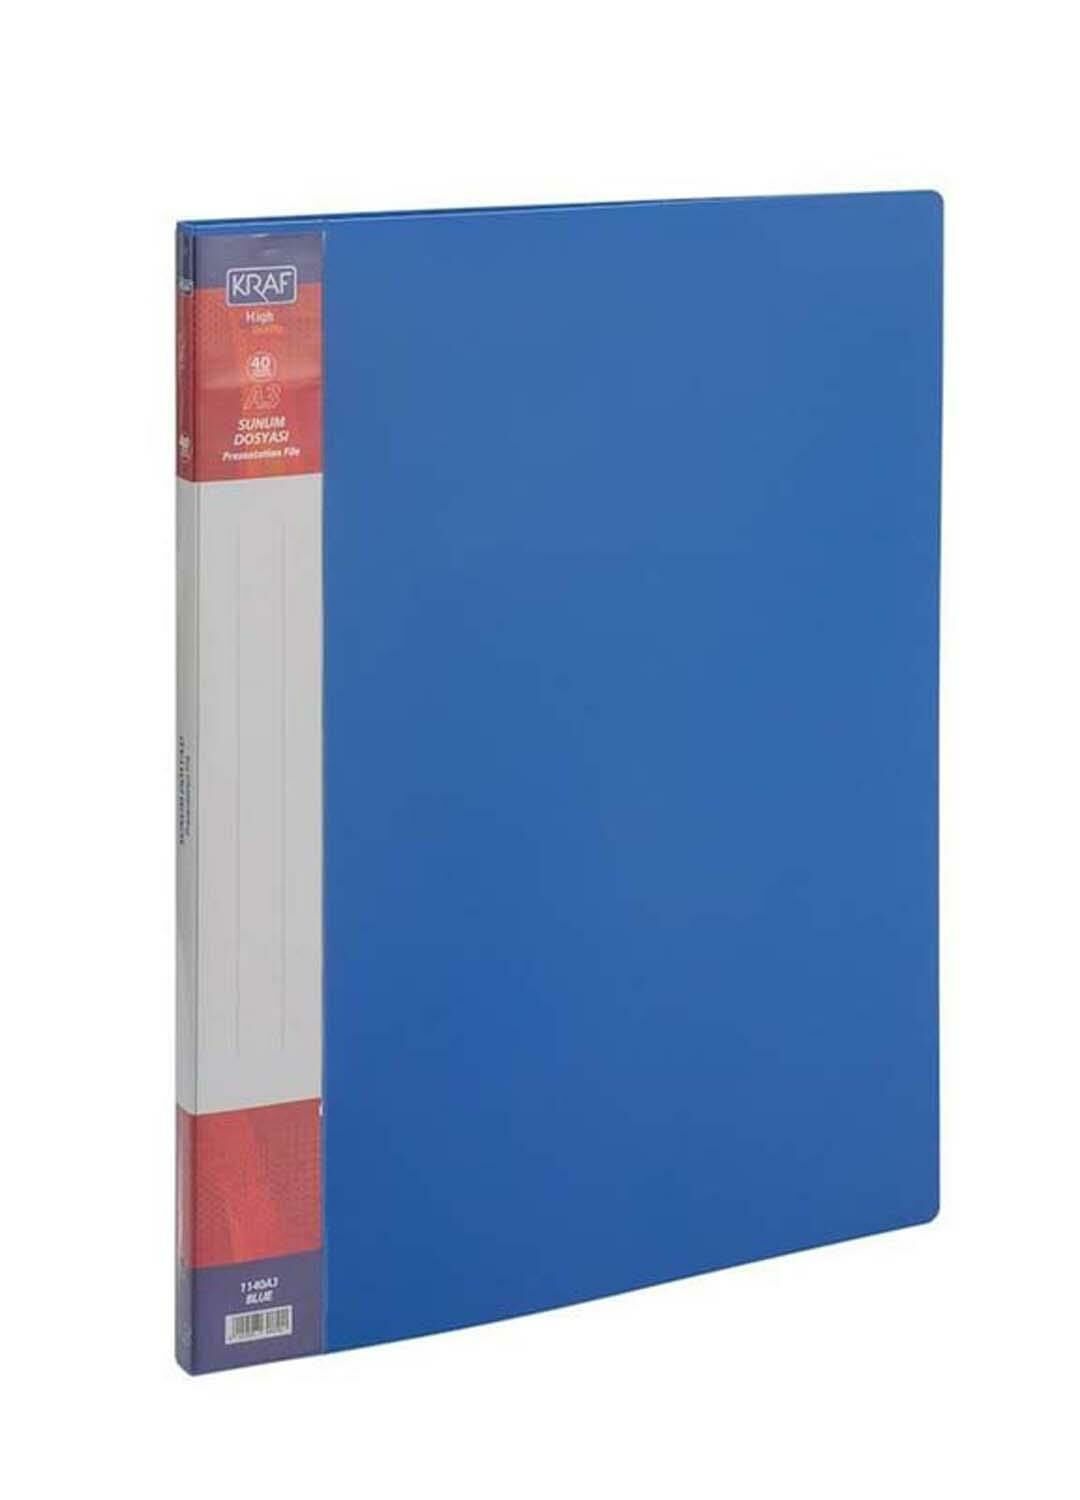 Kraf Sunum Dosyası A3 1140A3 40Lı Mavi